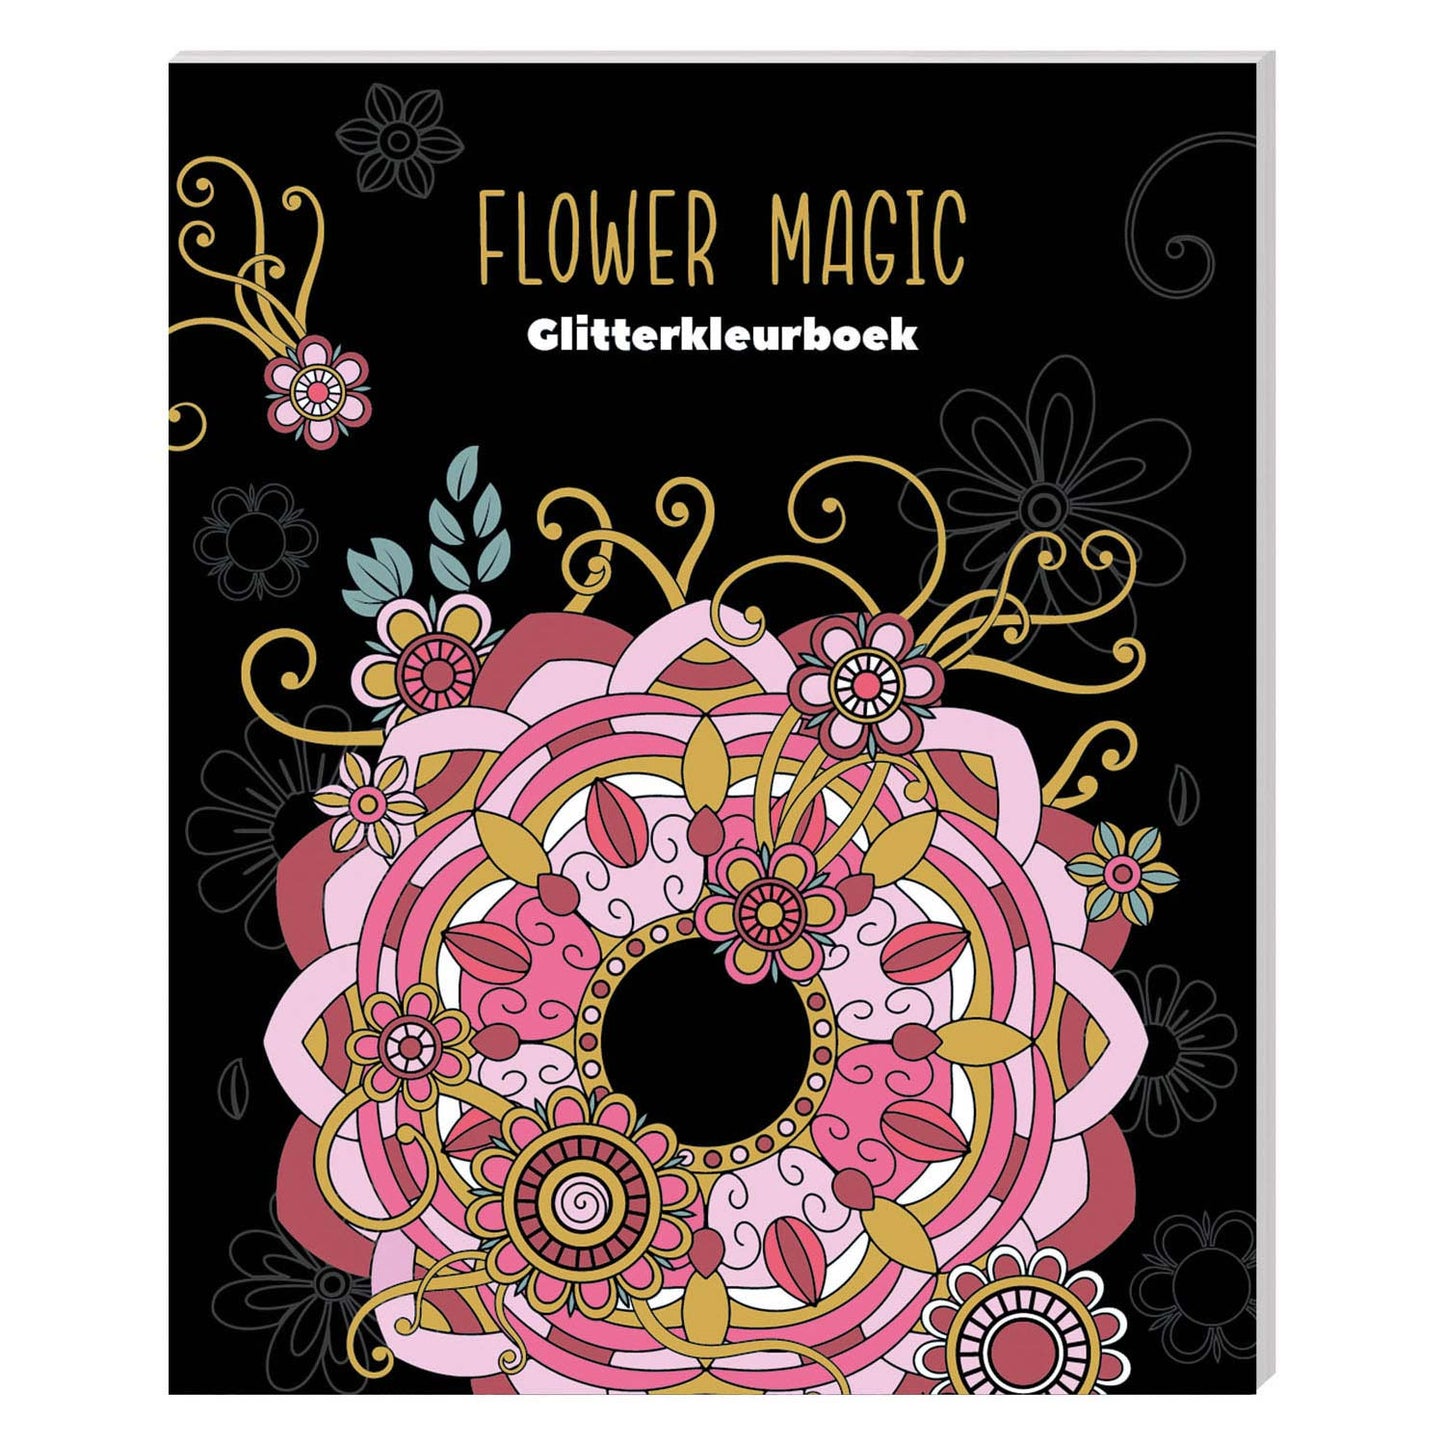 Flower magic | Glitter kleurboek